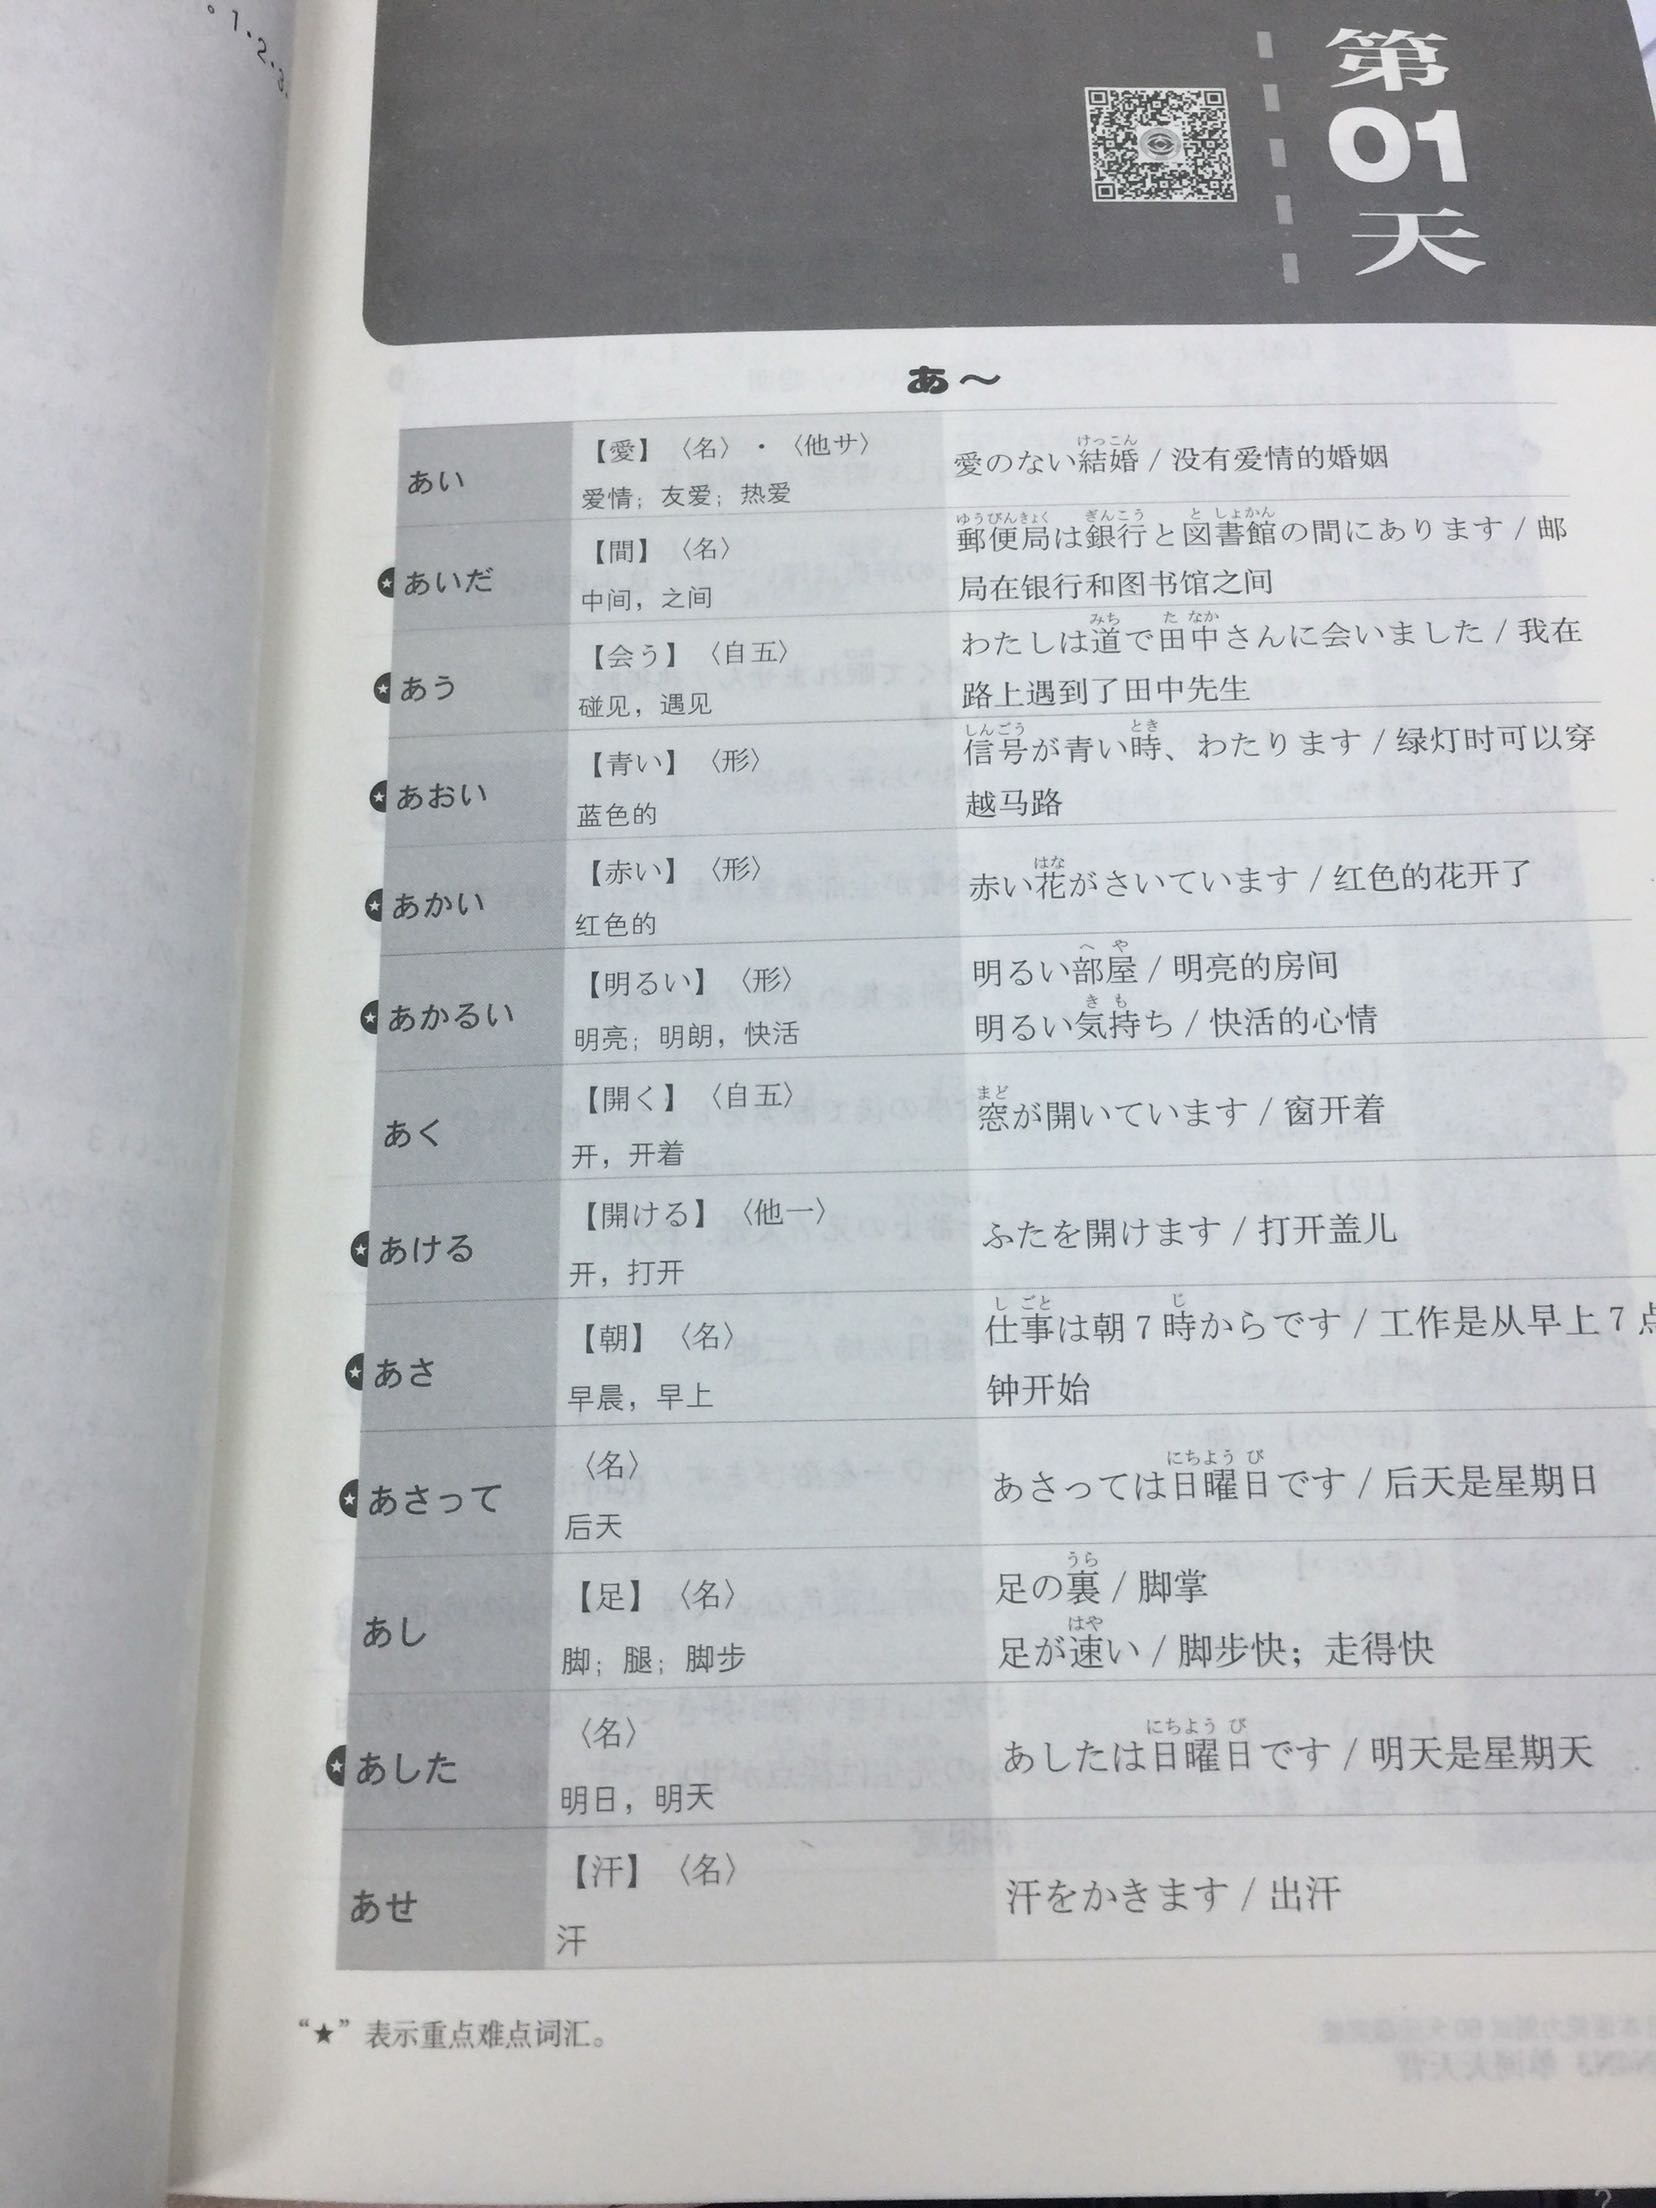 很好用的单词书，去日本游玩差不多够用了